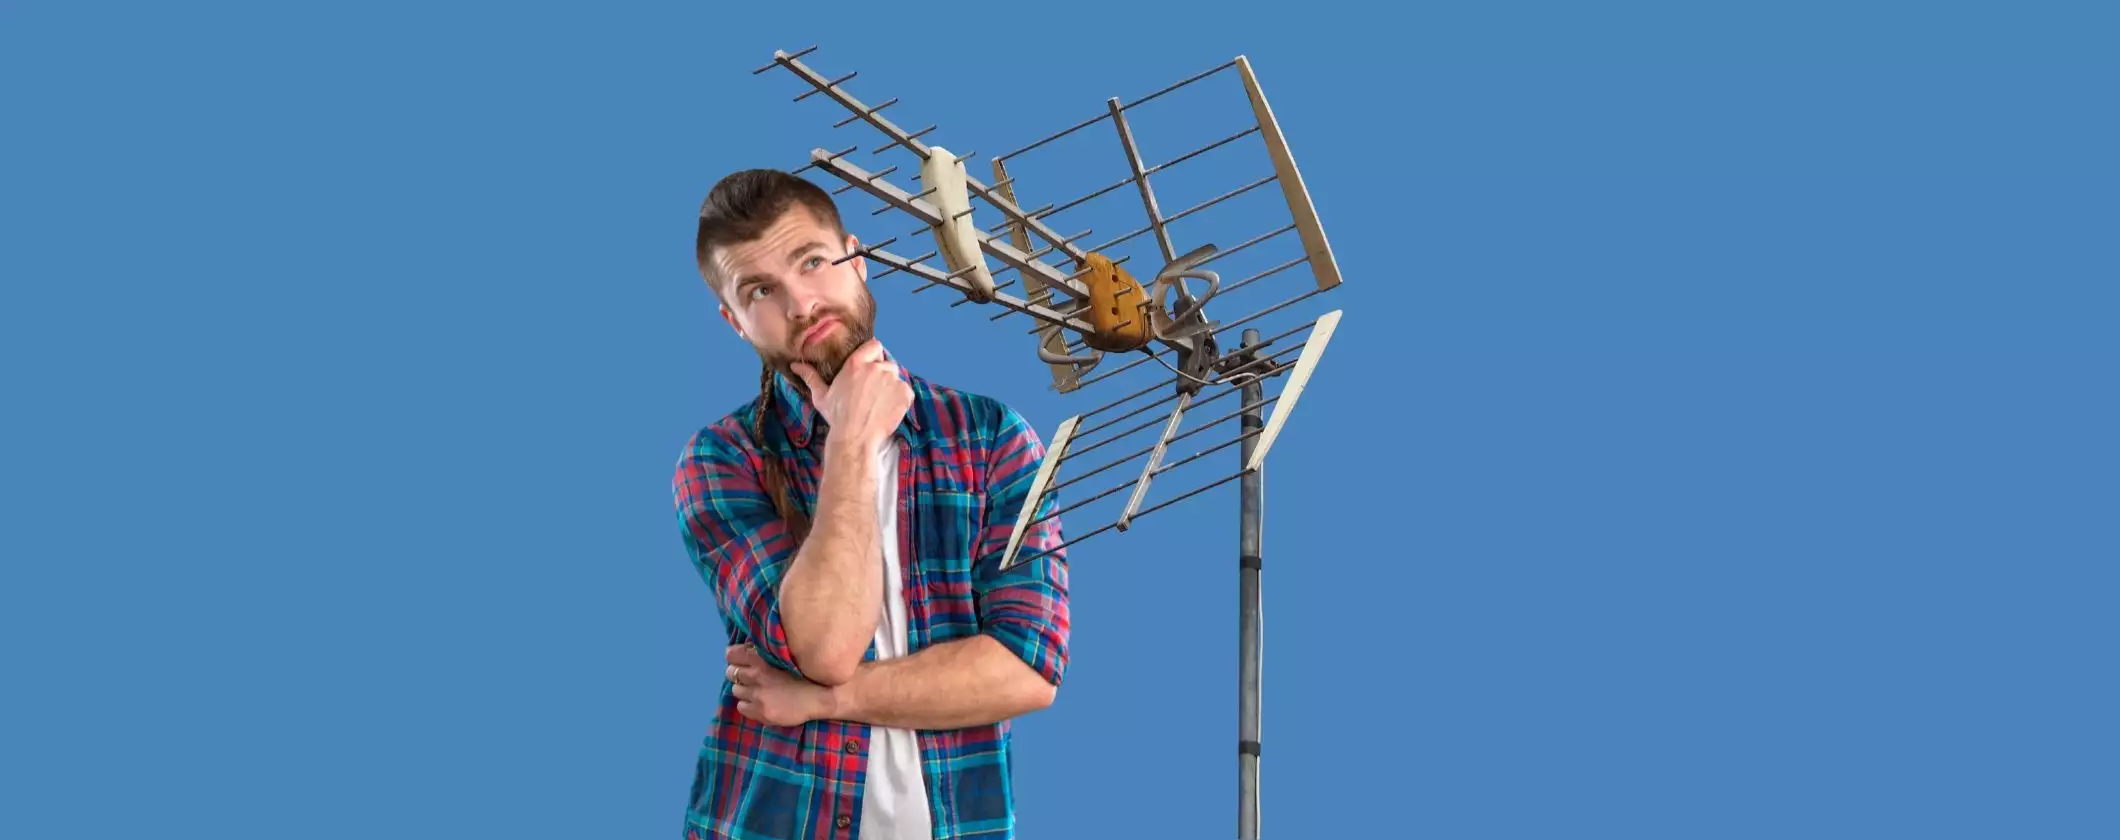 Digitale terrestre: ecco le antenne compatibili con la nuova tecnologia